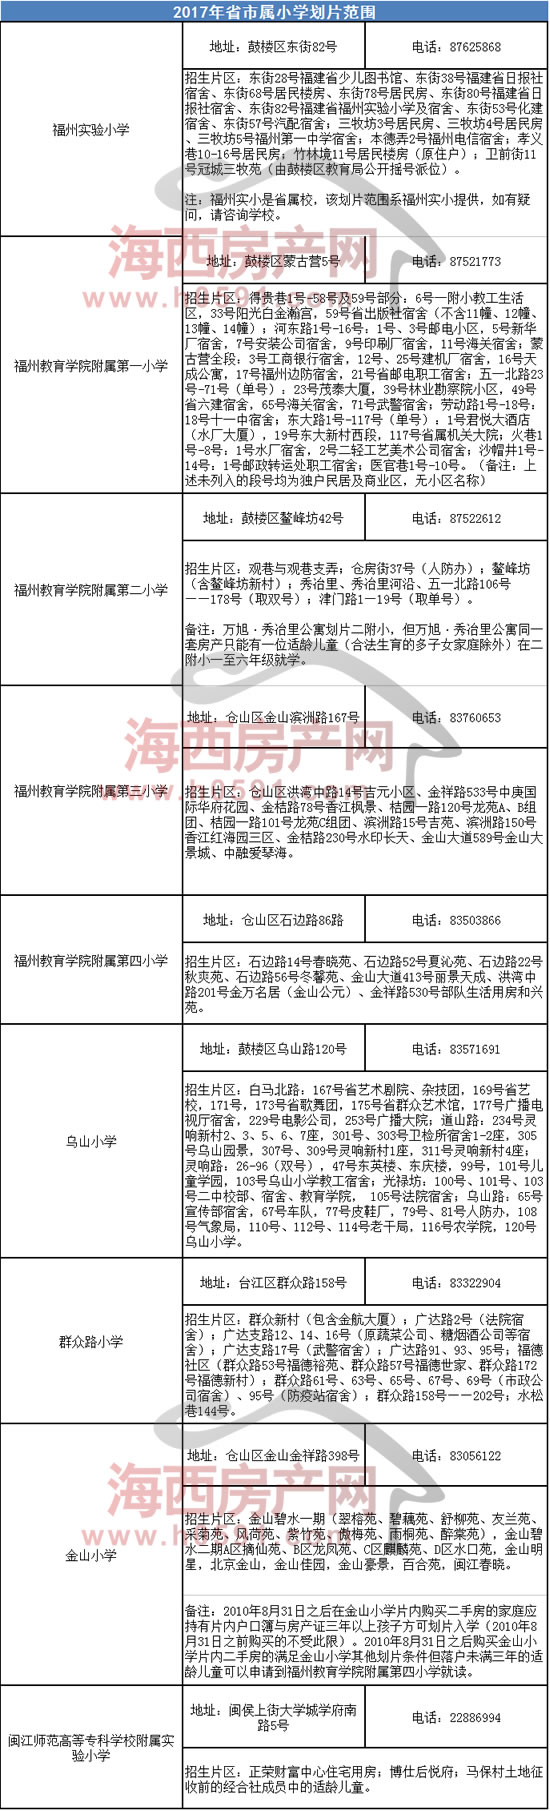 【重磅】福州2017年省市属小学划片范围公布